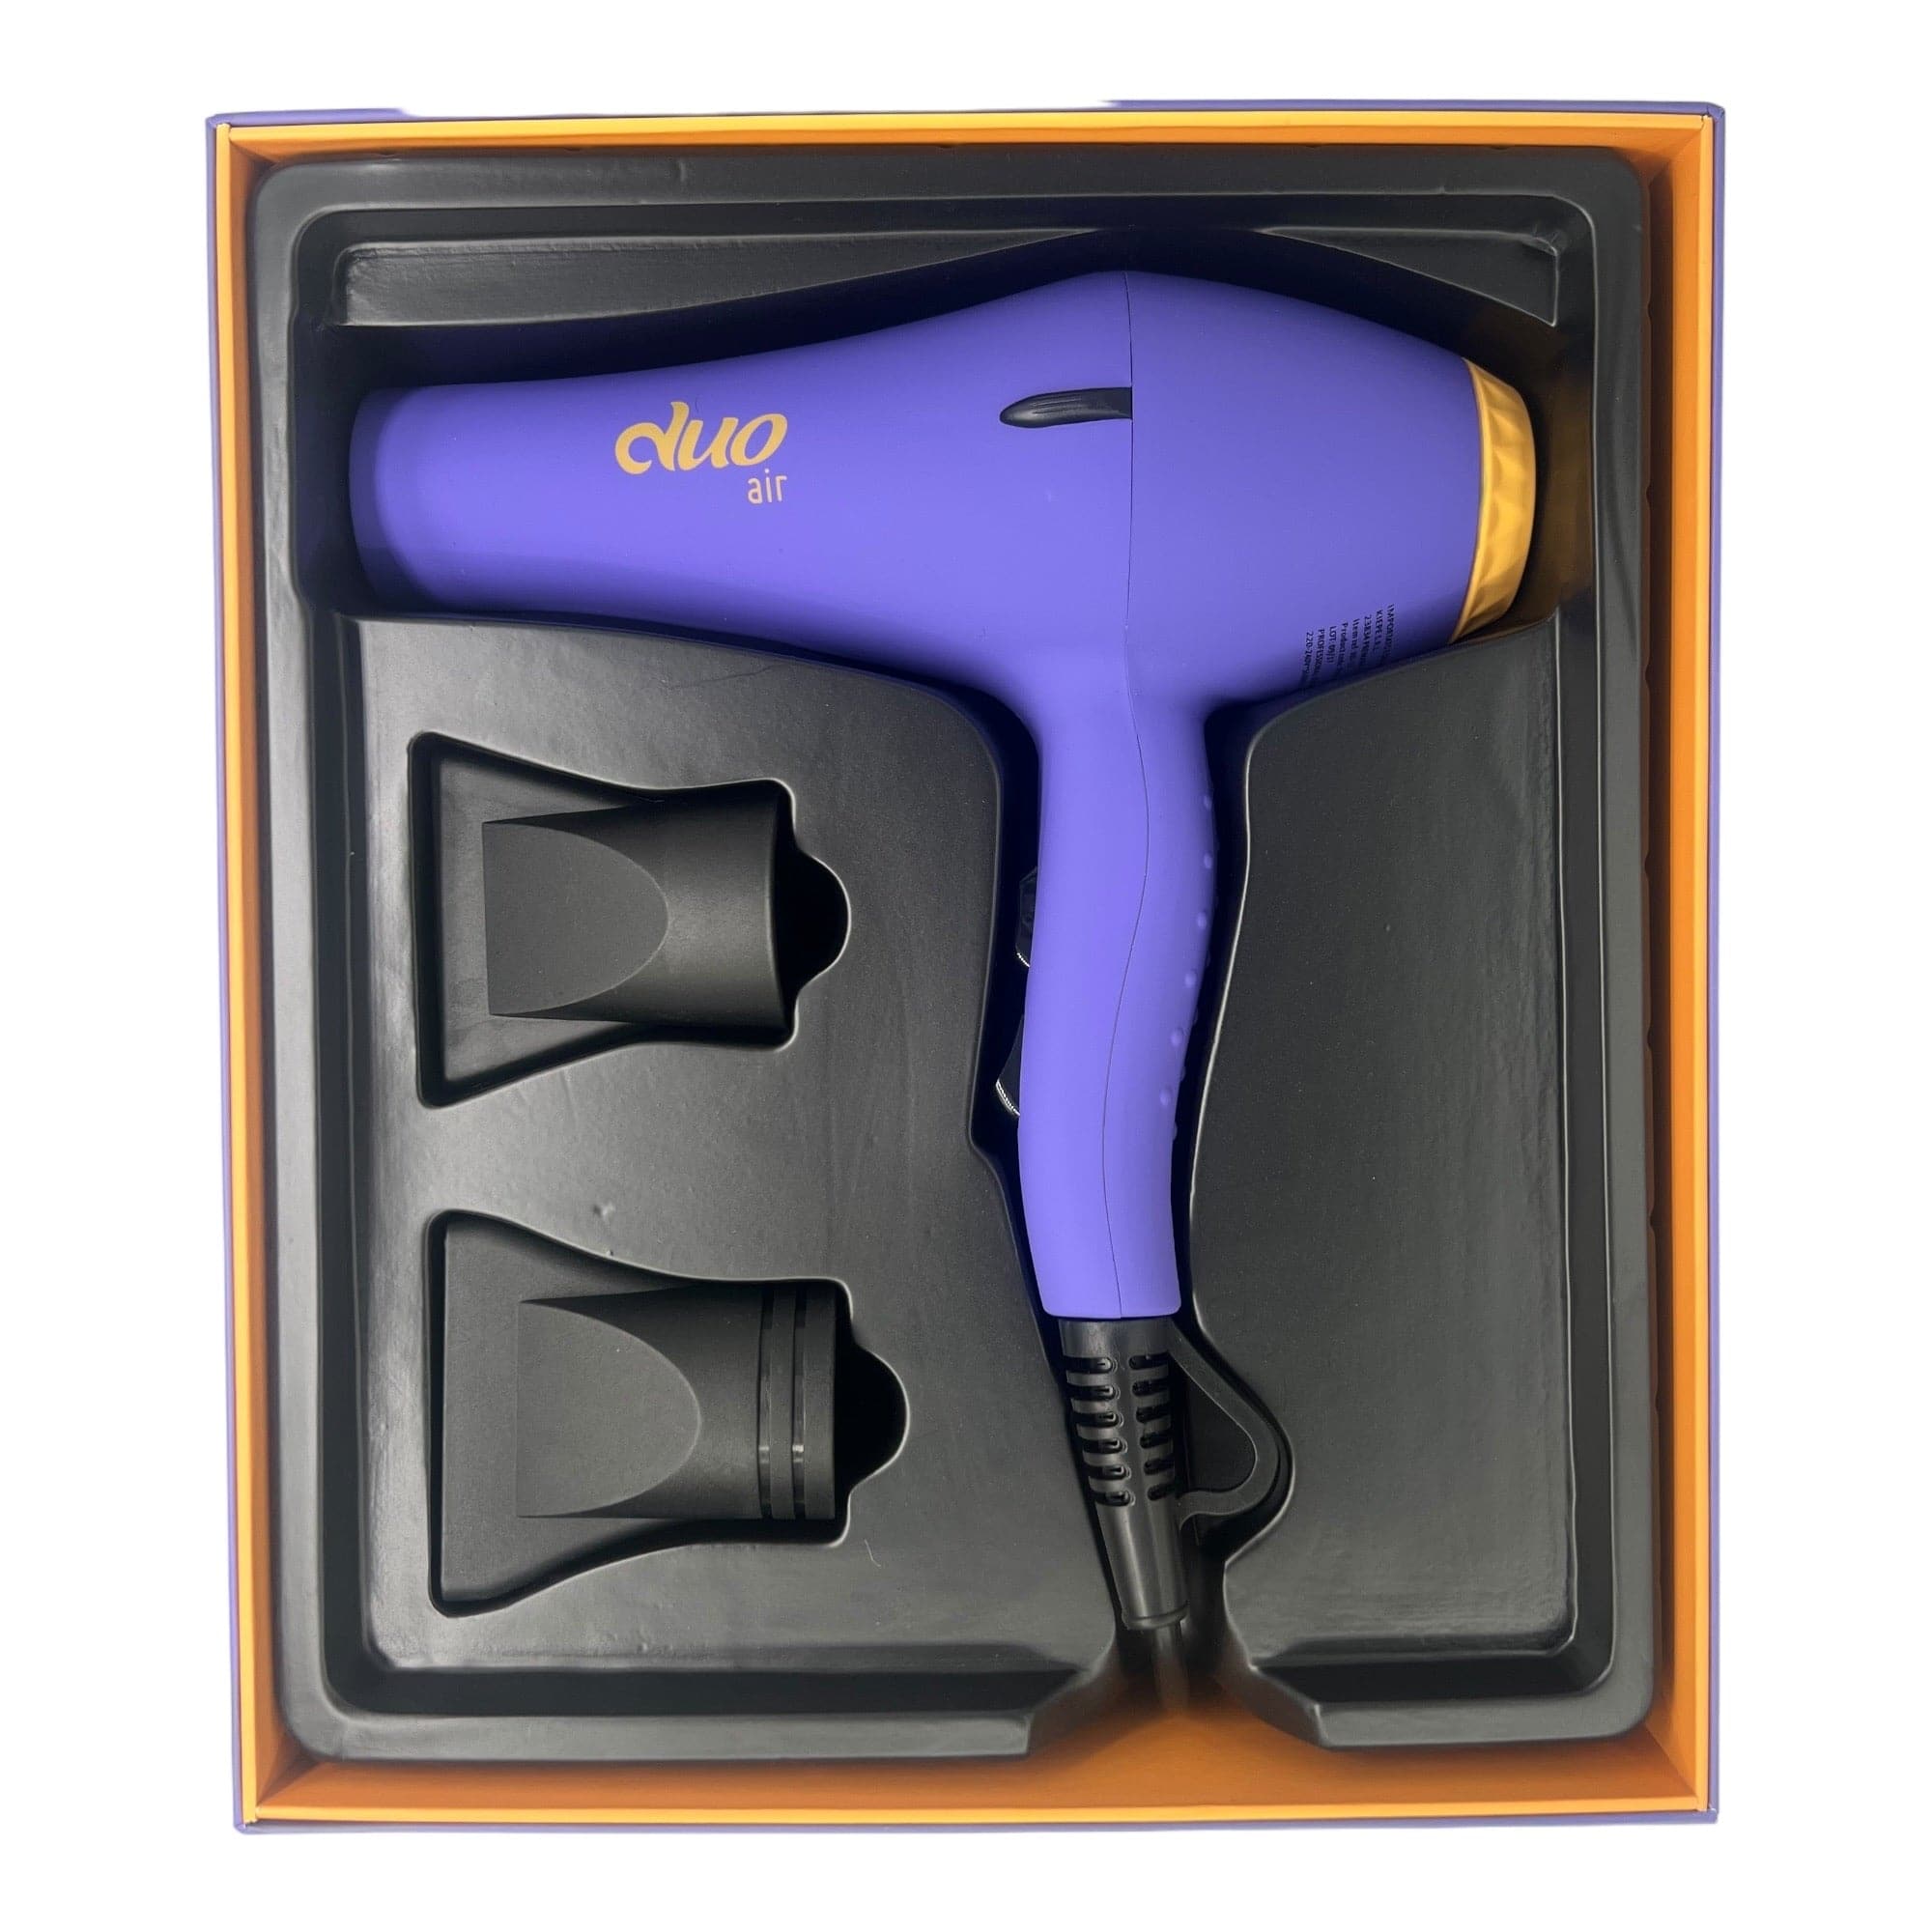 Kiepe -  Dou Air Hair Dryer 2400W Purple-Yellow